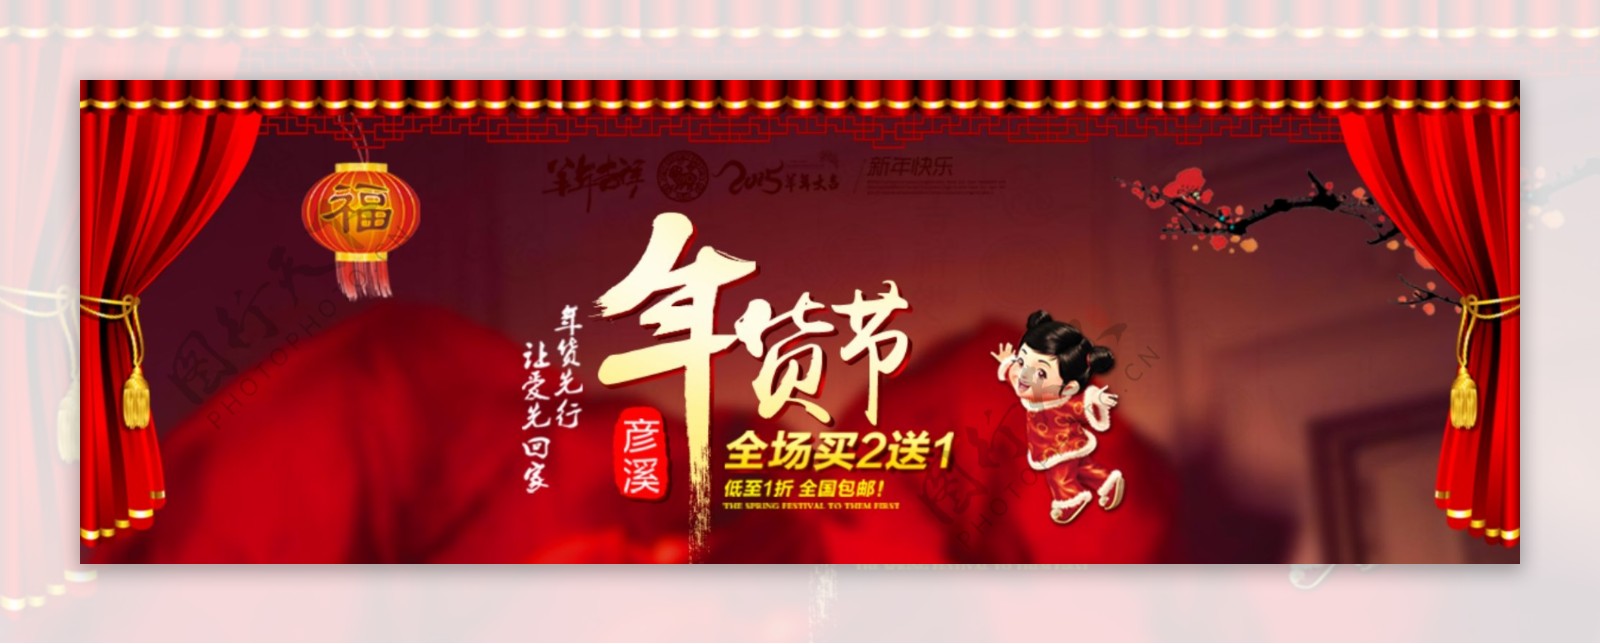 2015年春节新年淘宝商城年货节海报